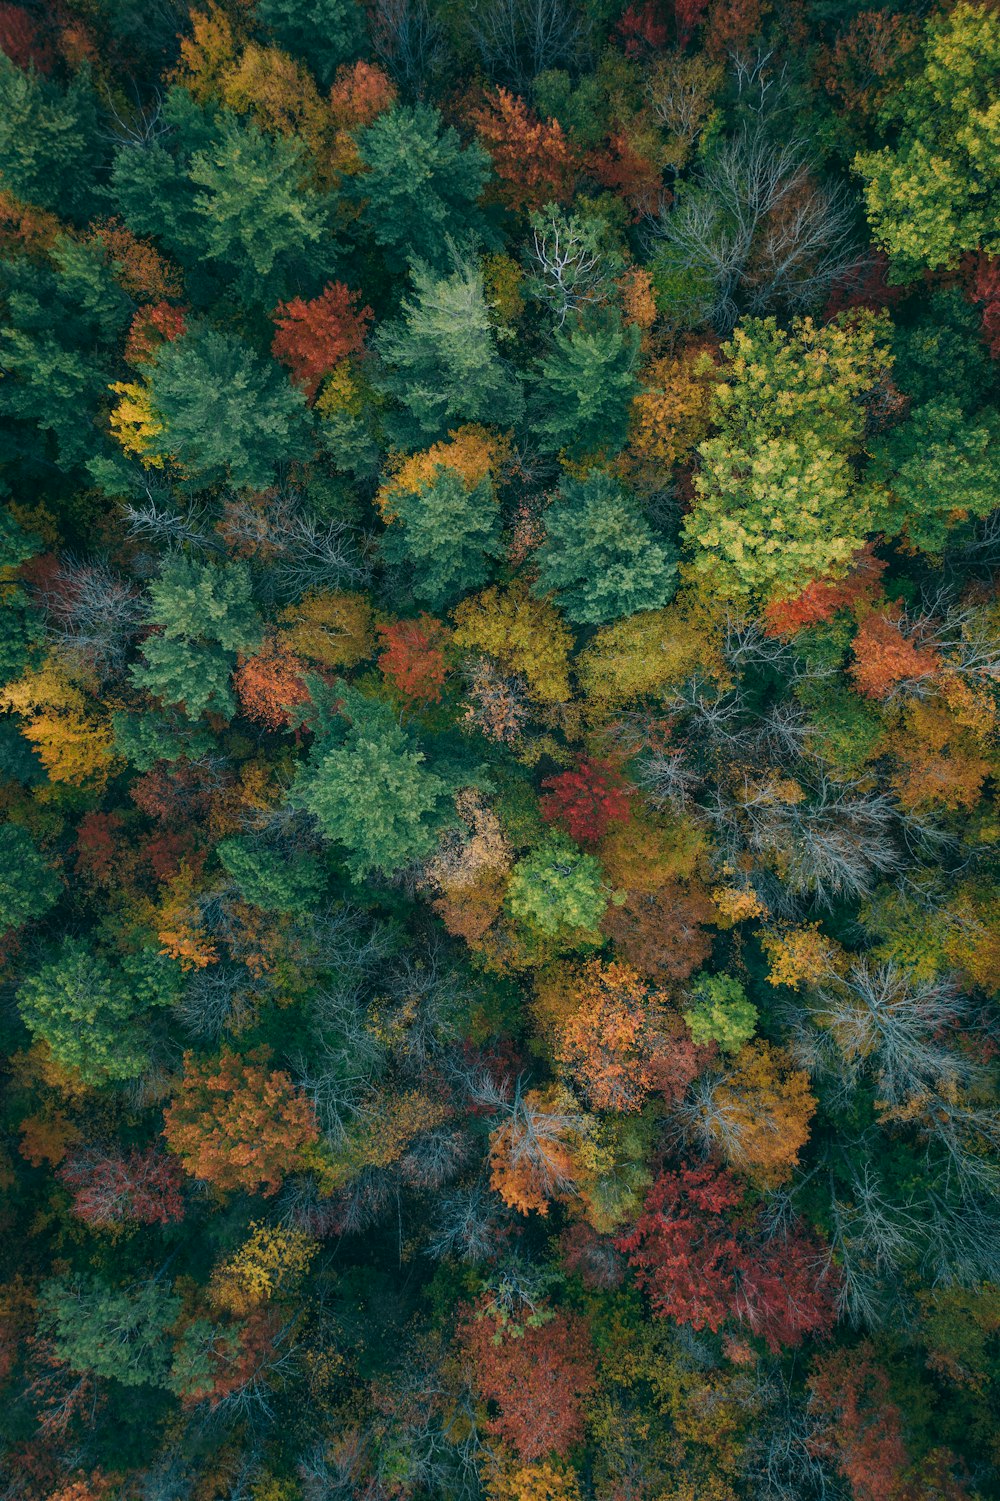 Ein Wald mit vielen verschiedenfarbigen Bäumen